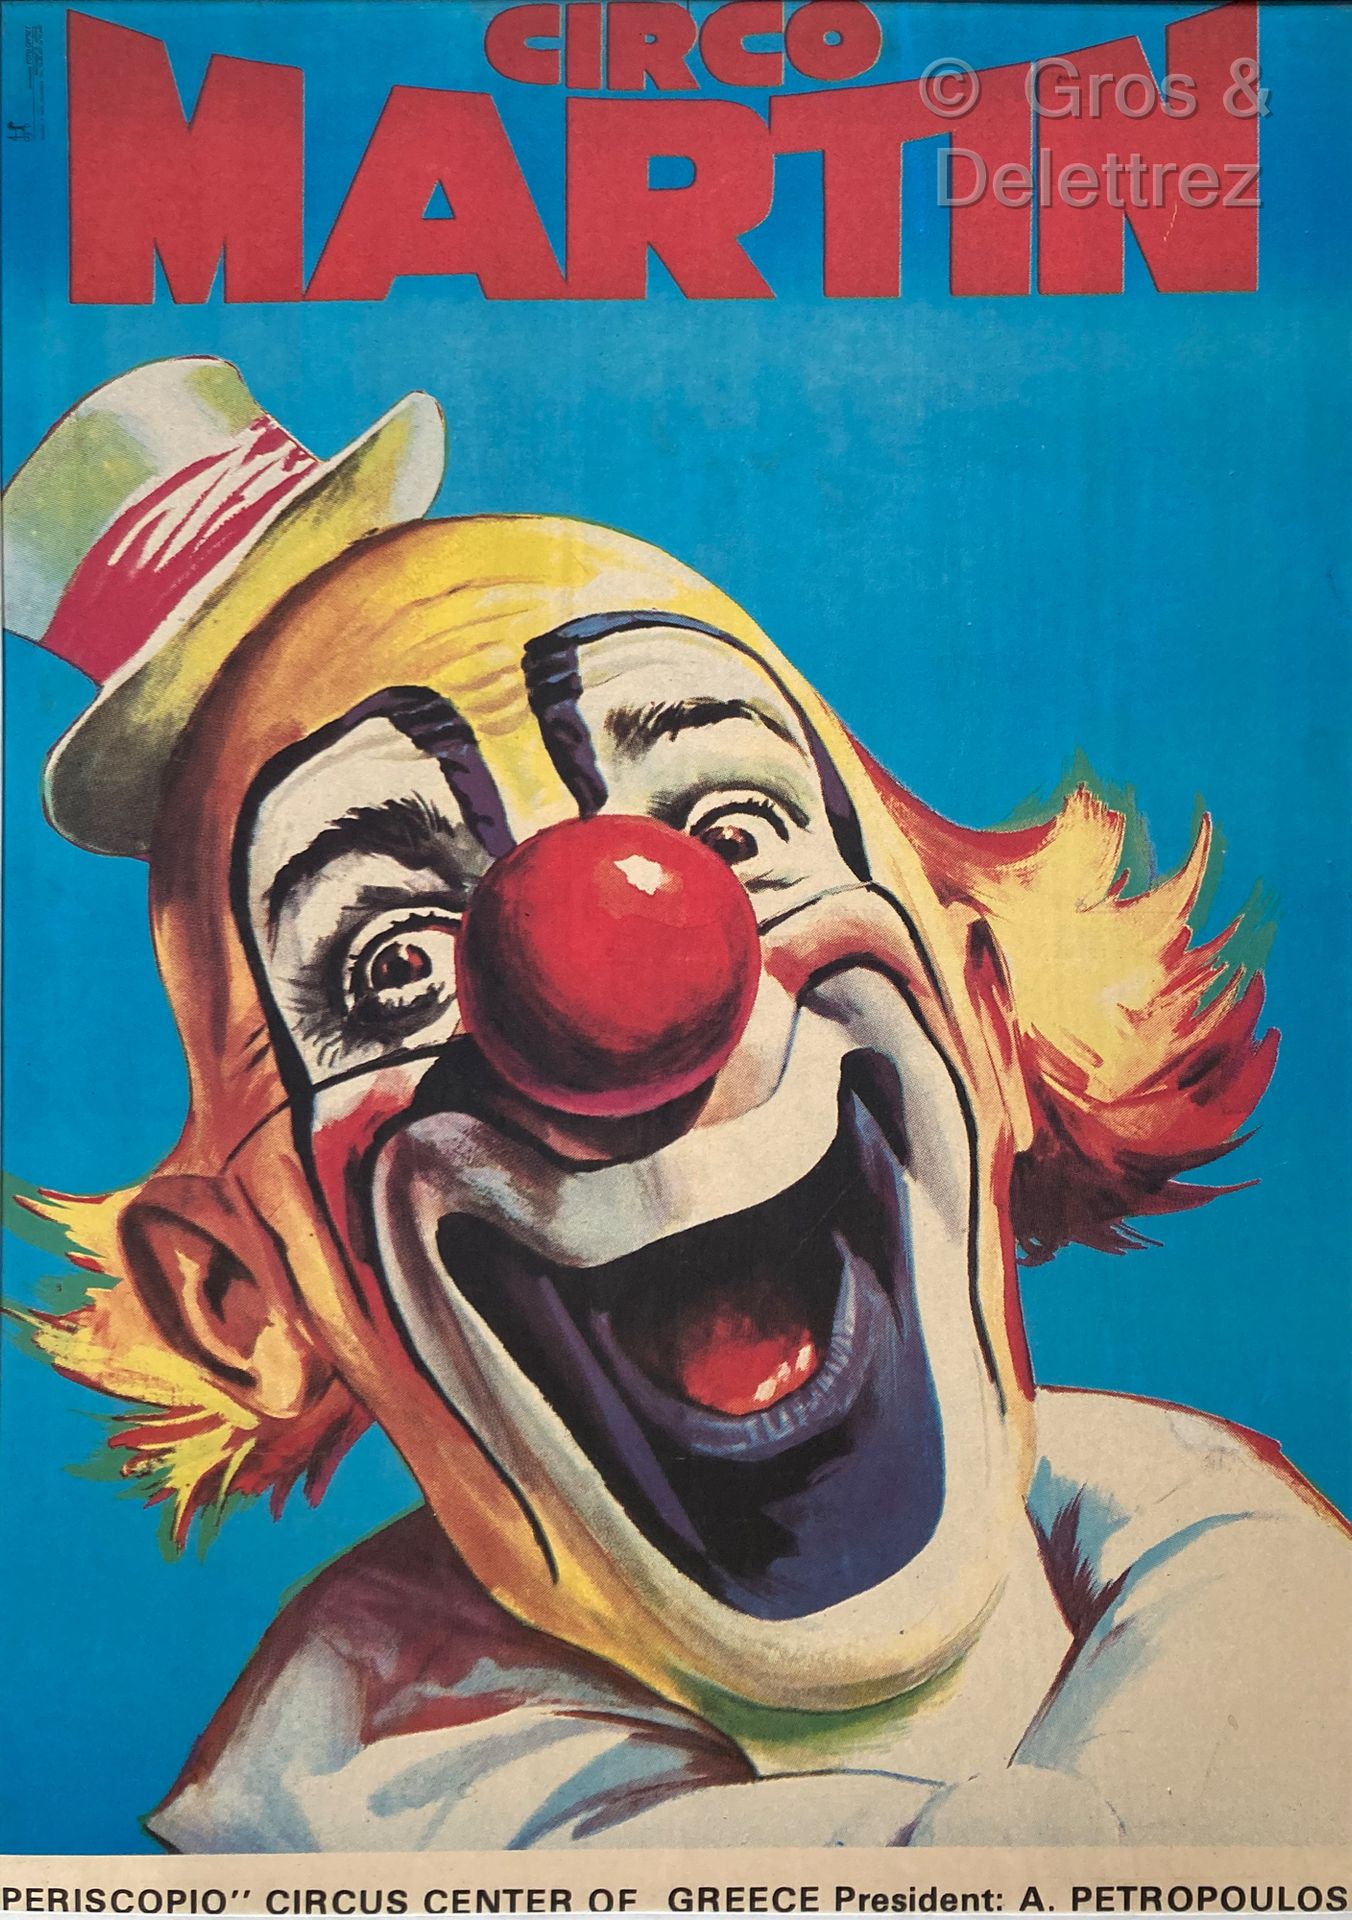 Null CIRCO MARTIN

Manifesto del circo che mostra il clown Auguste

97 x 68 cm